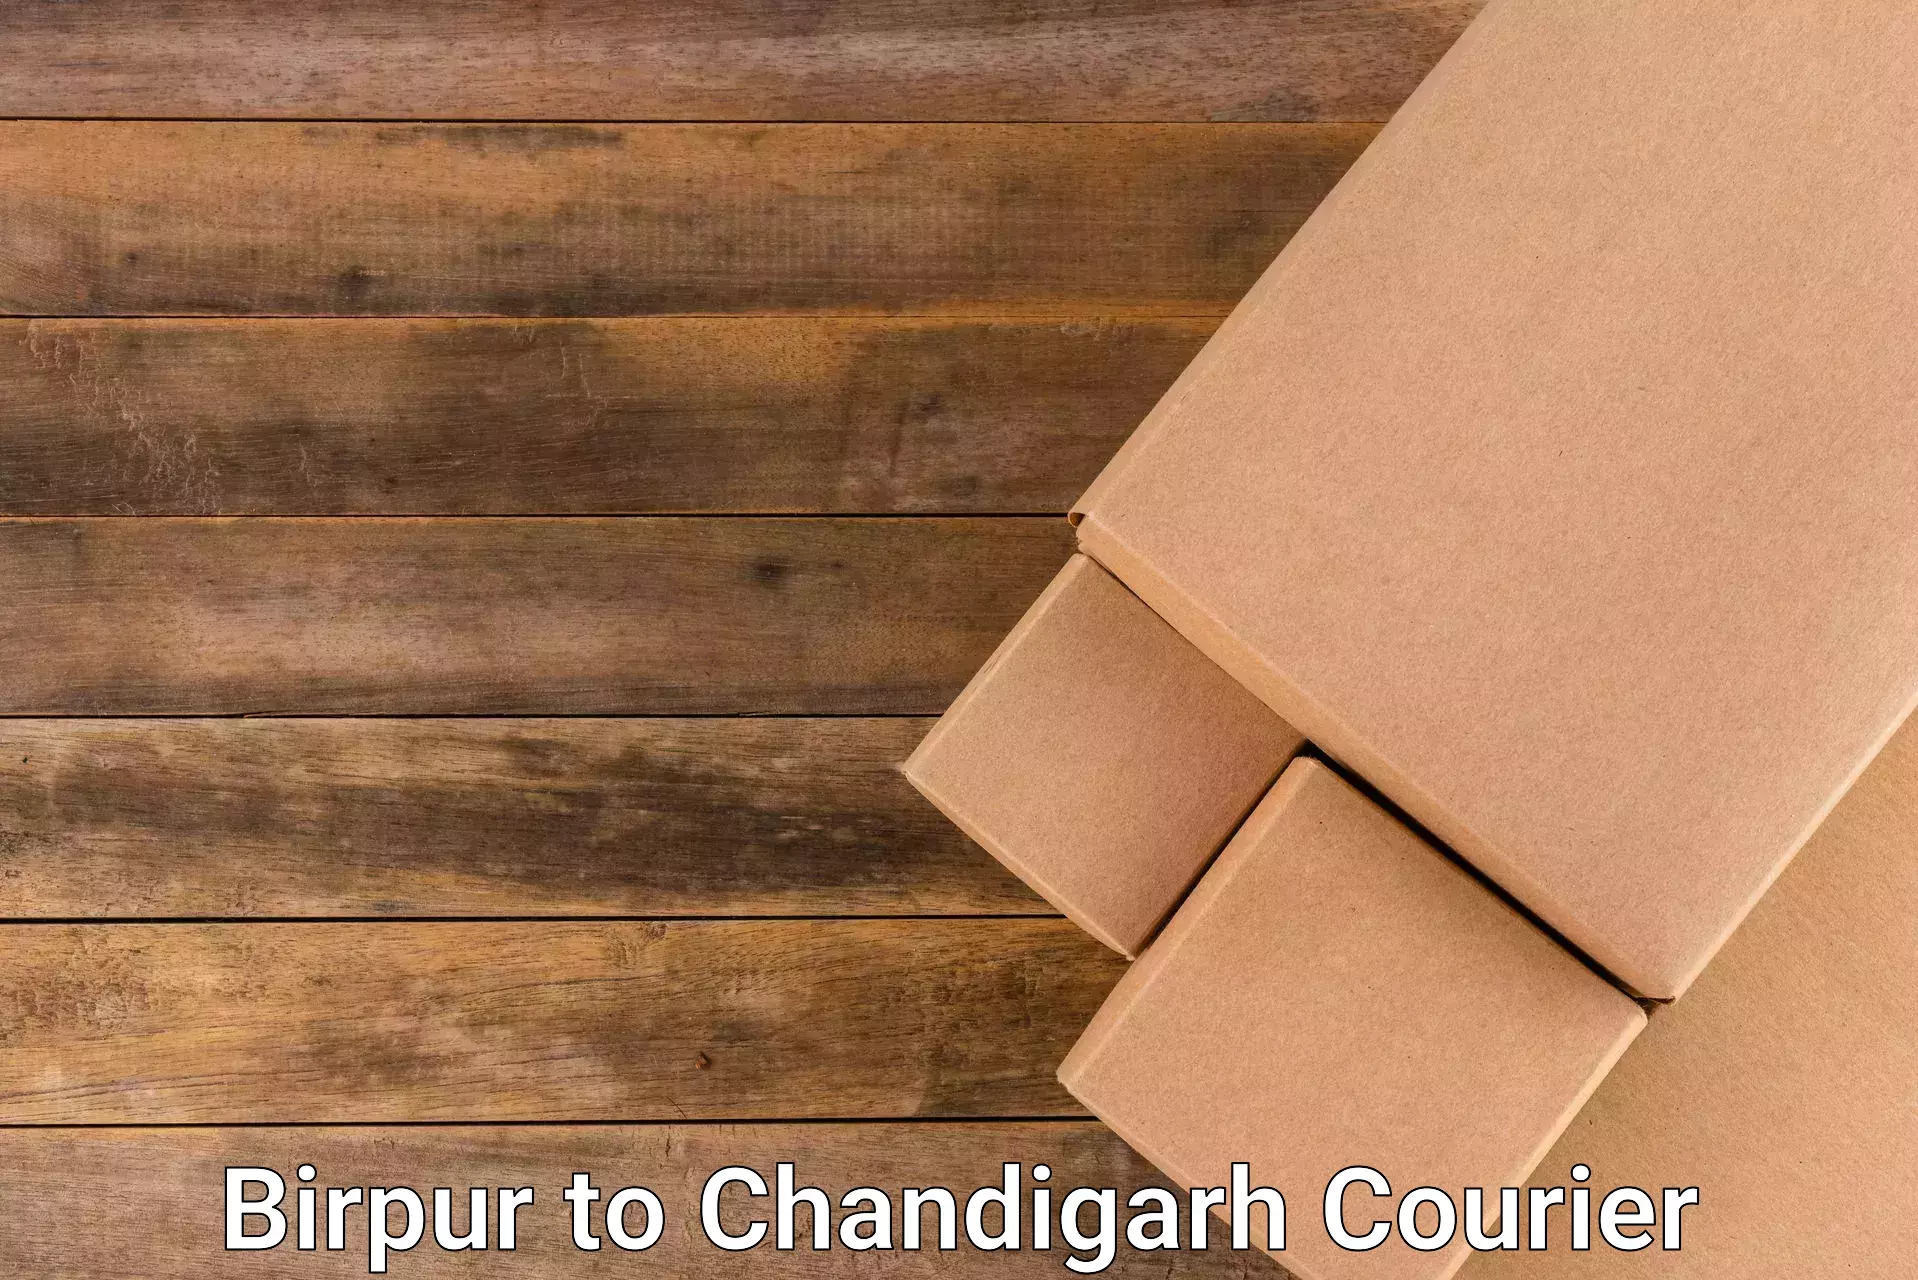 Efficient freight transportation Birpur to Chandigarh